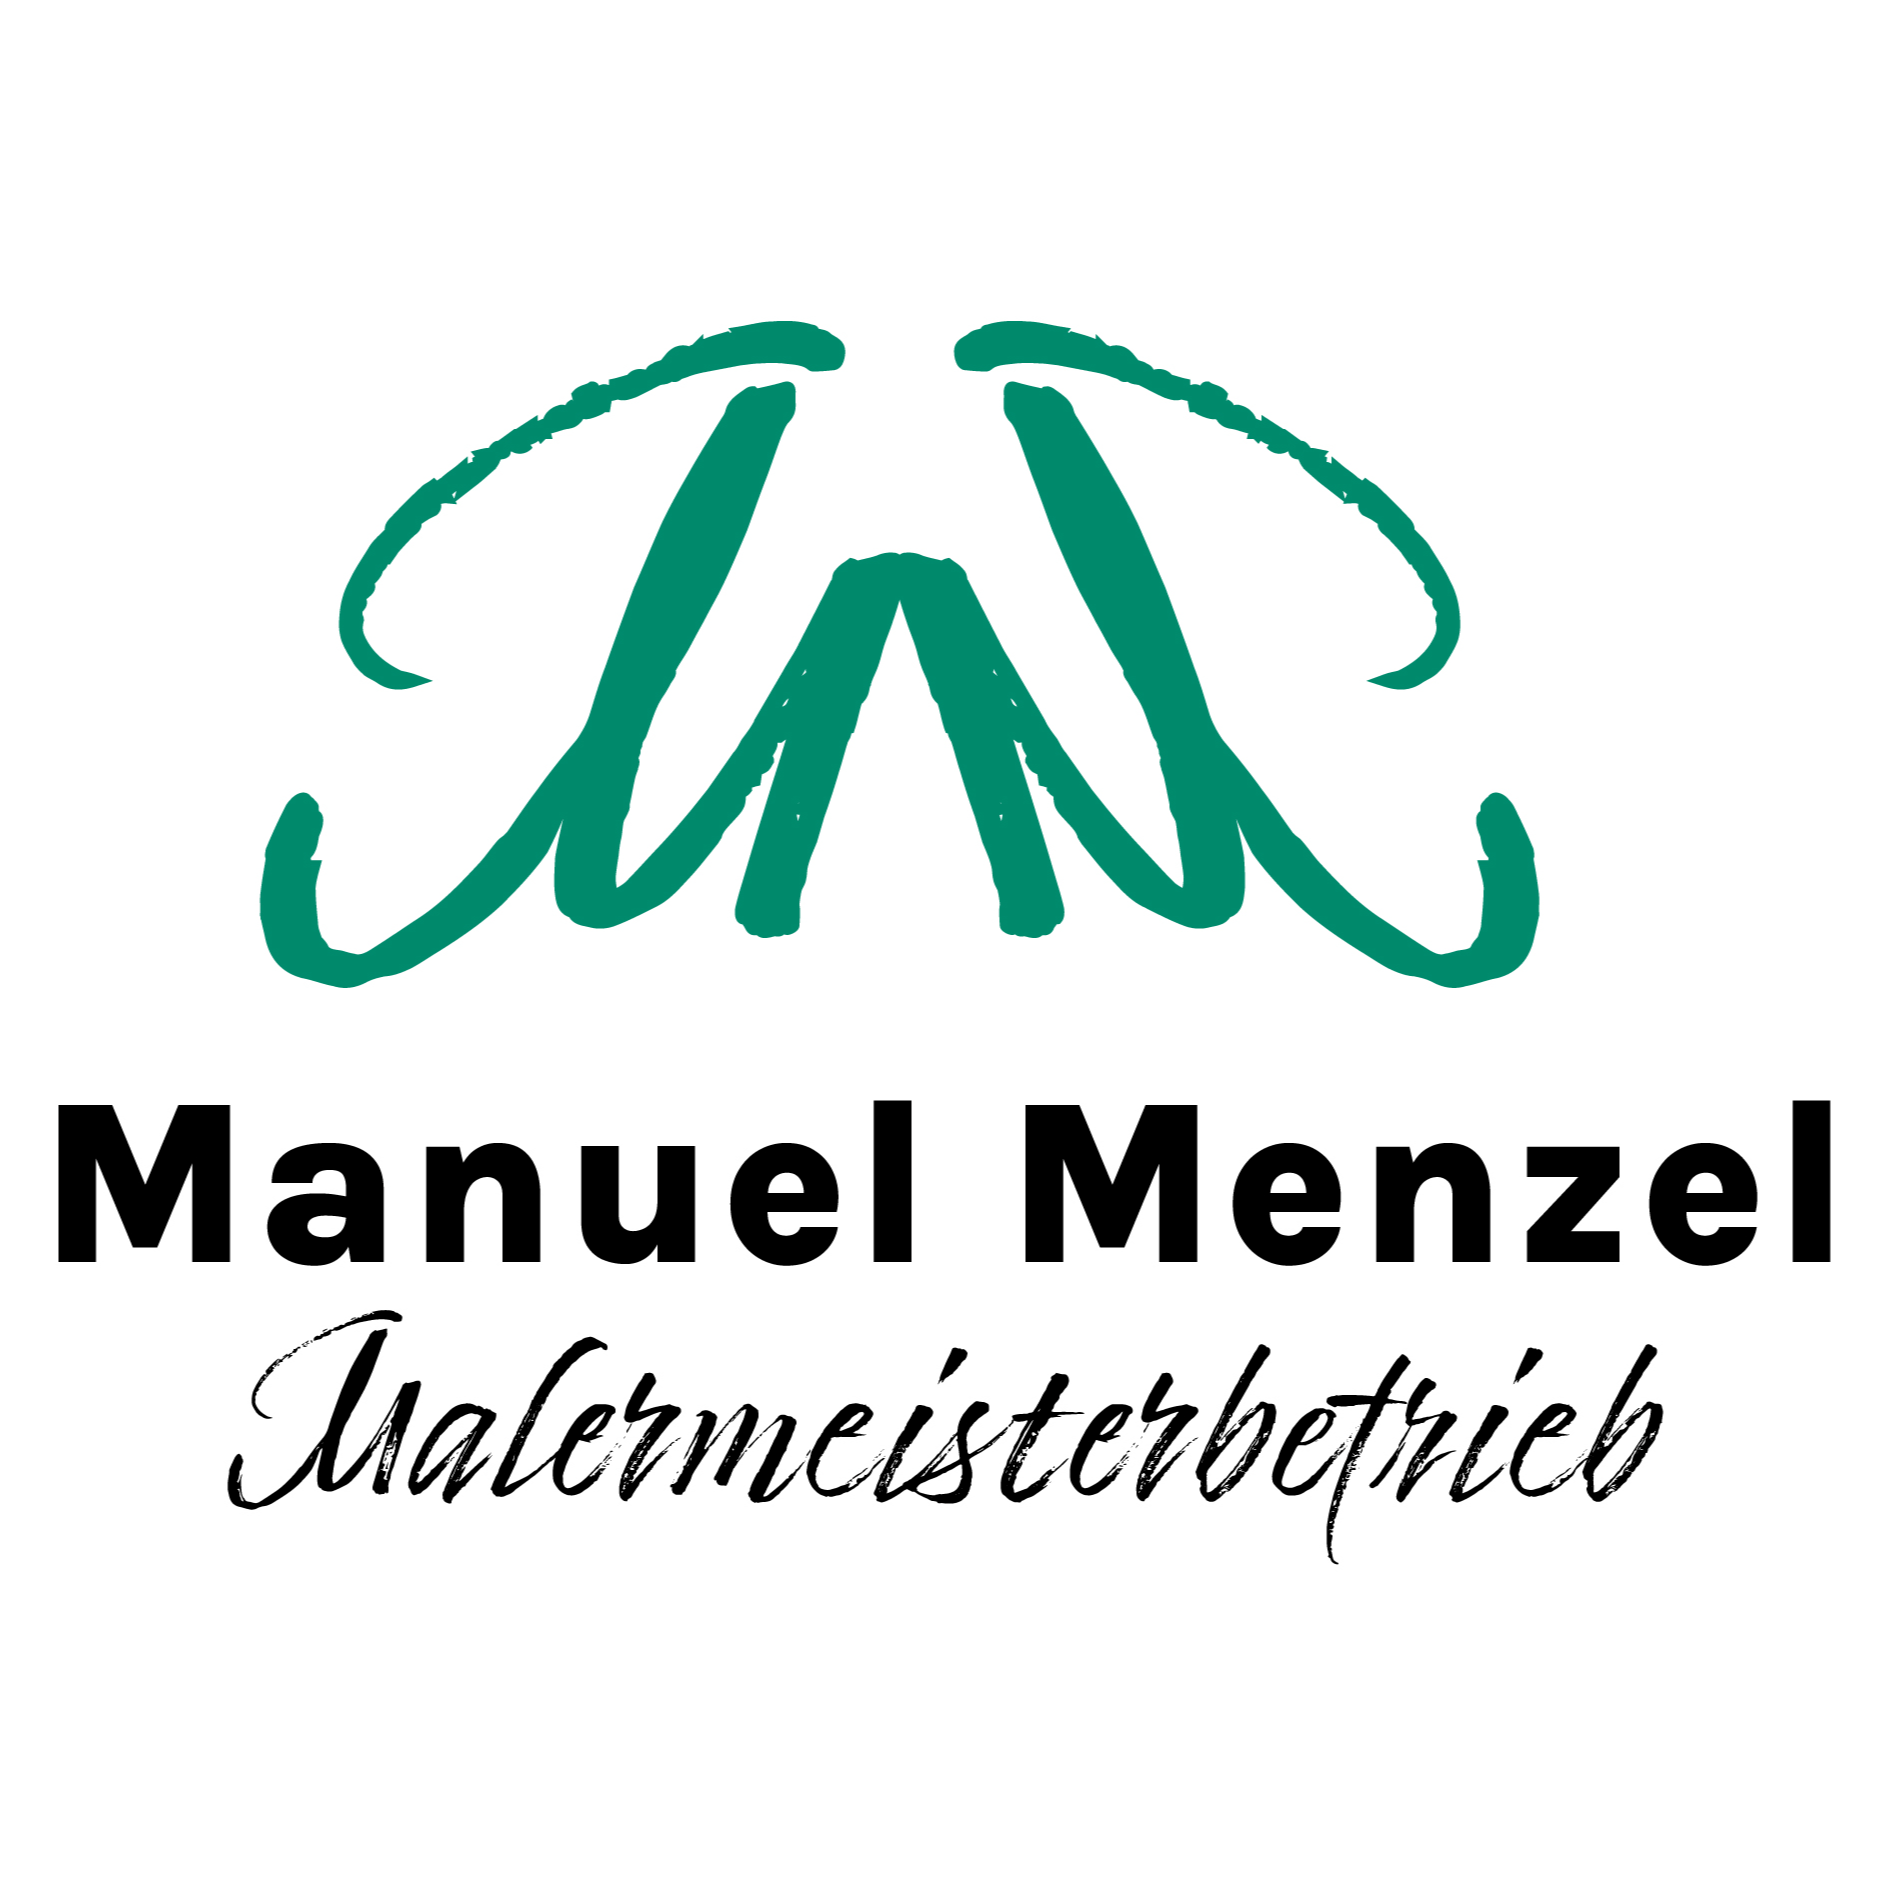 Manuel Menzel Malermeisterbetrieb Logo